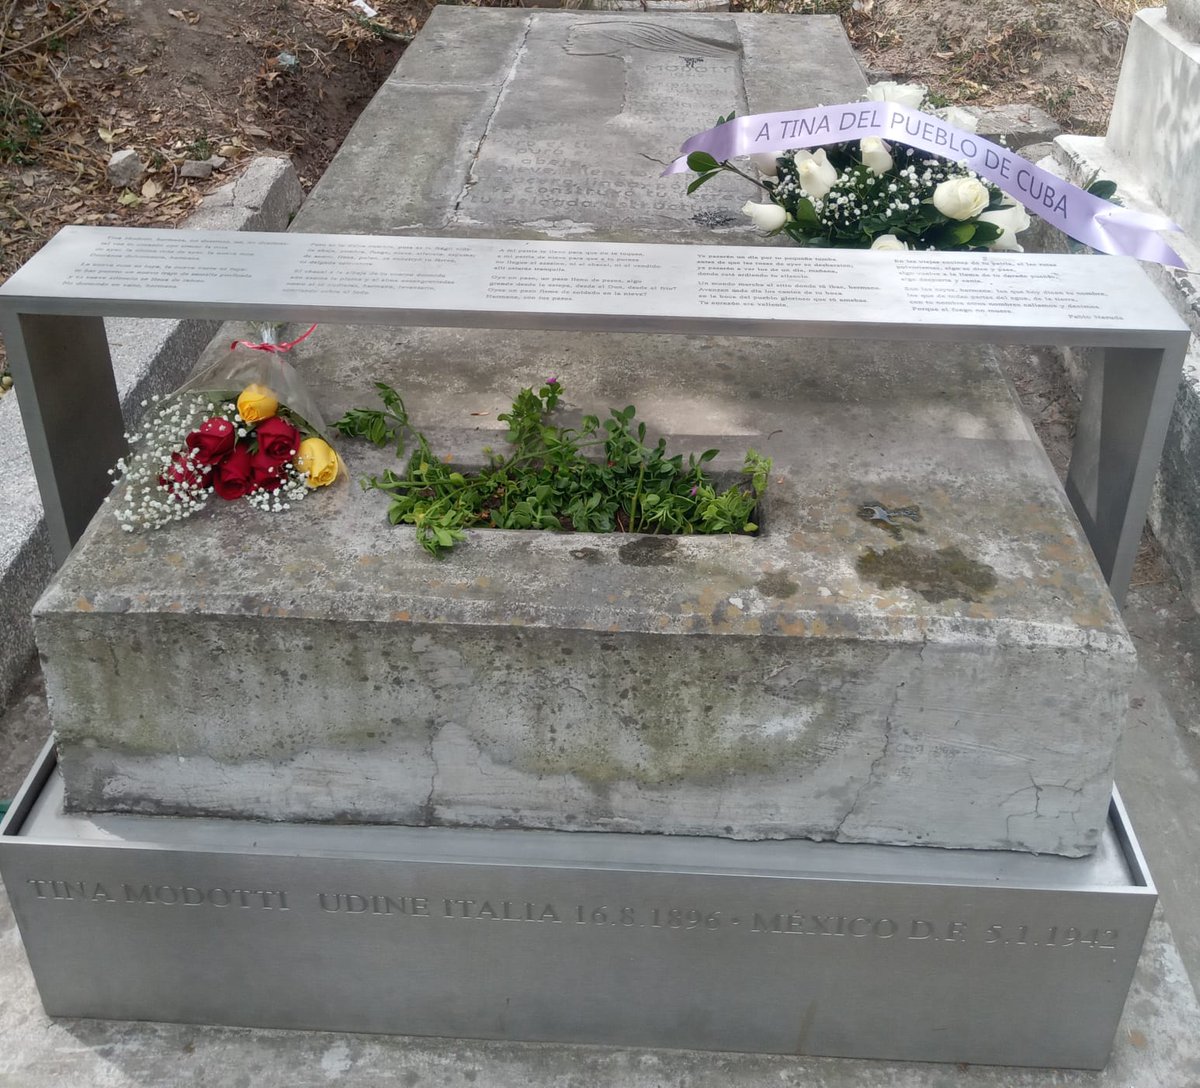 Con motivo de conmemorarse el próximo 10 de enero un aniversario más del asesinato de Mella, compatriotas de nuestra misión en México visitaron hoy la tumba de Tina Modotti para rendirle tributo. #Cuba #CDRCuba #TinaModotti @FridaMa37743345